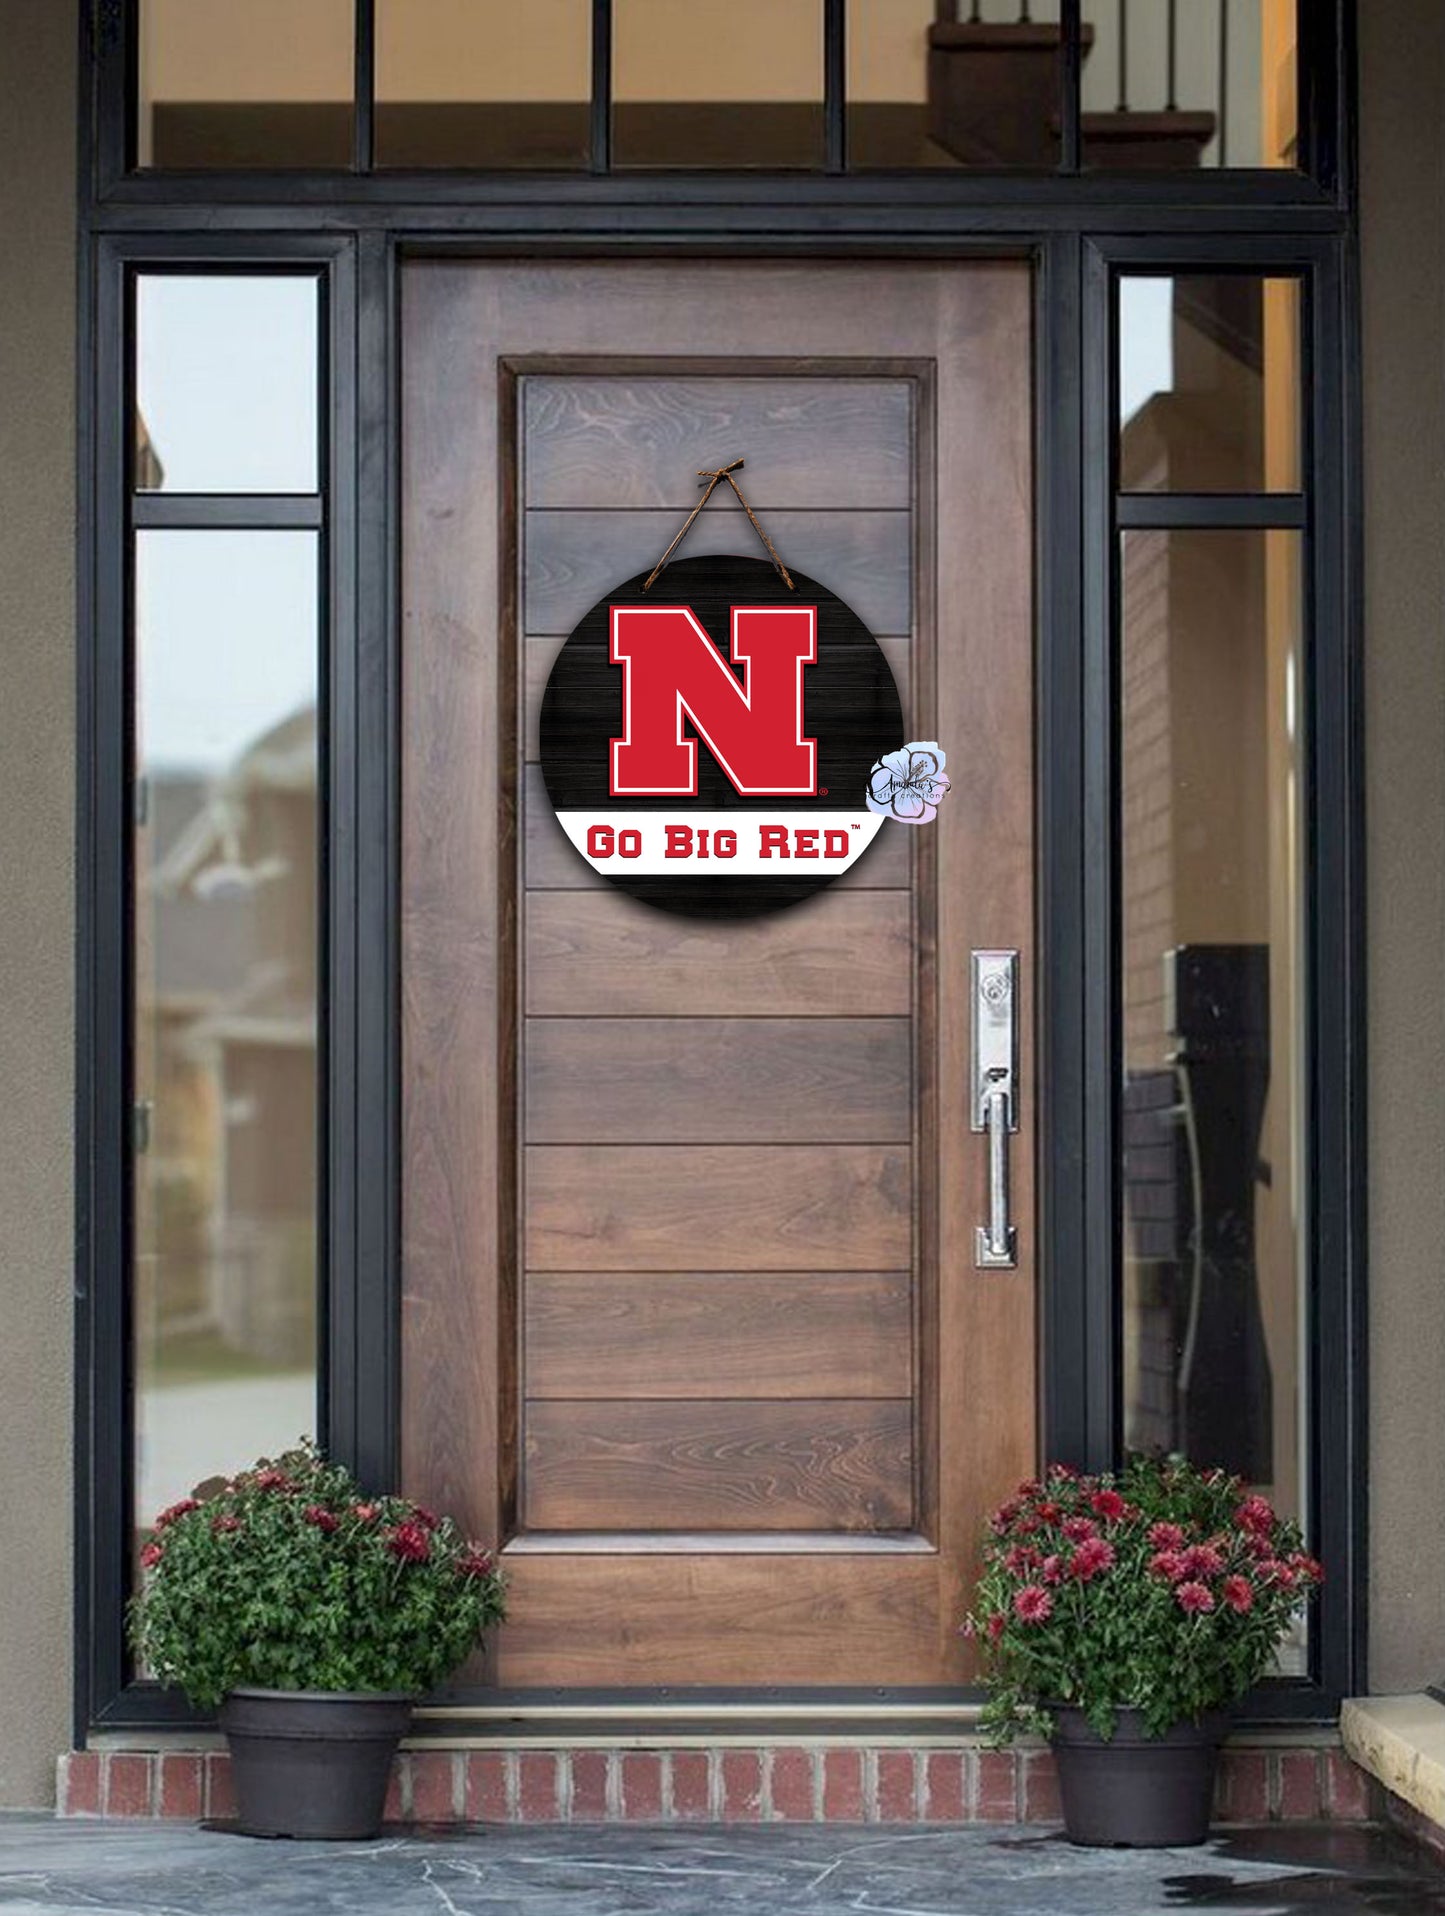 Nebraska N Go Big Red door hanger